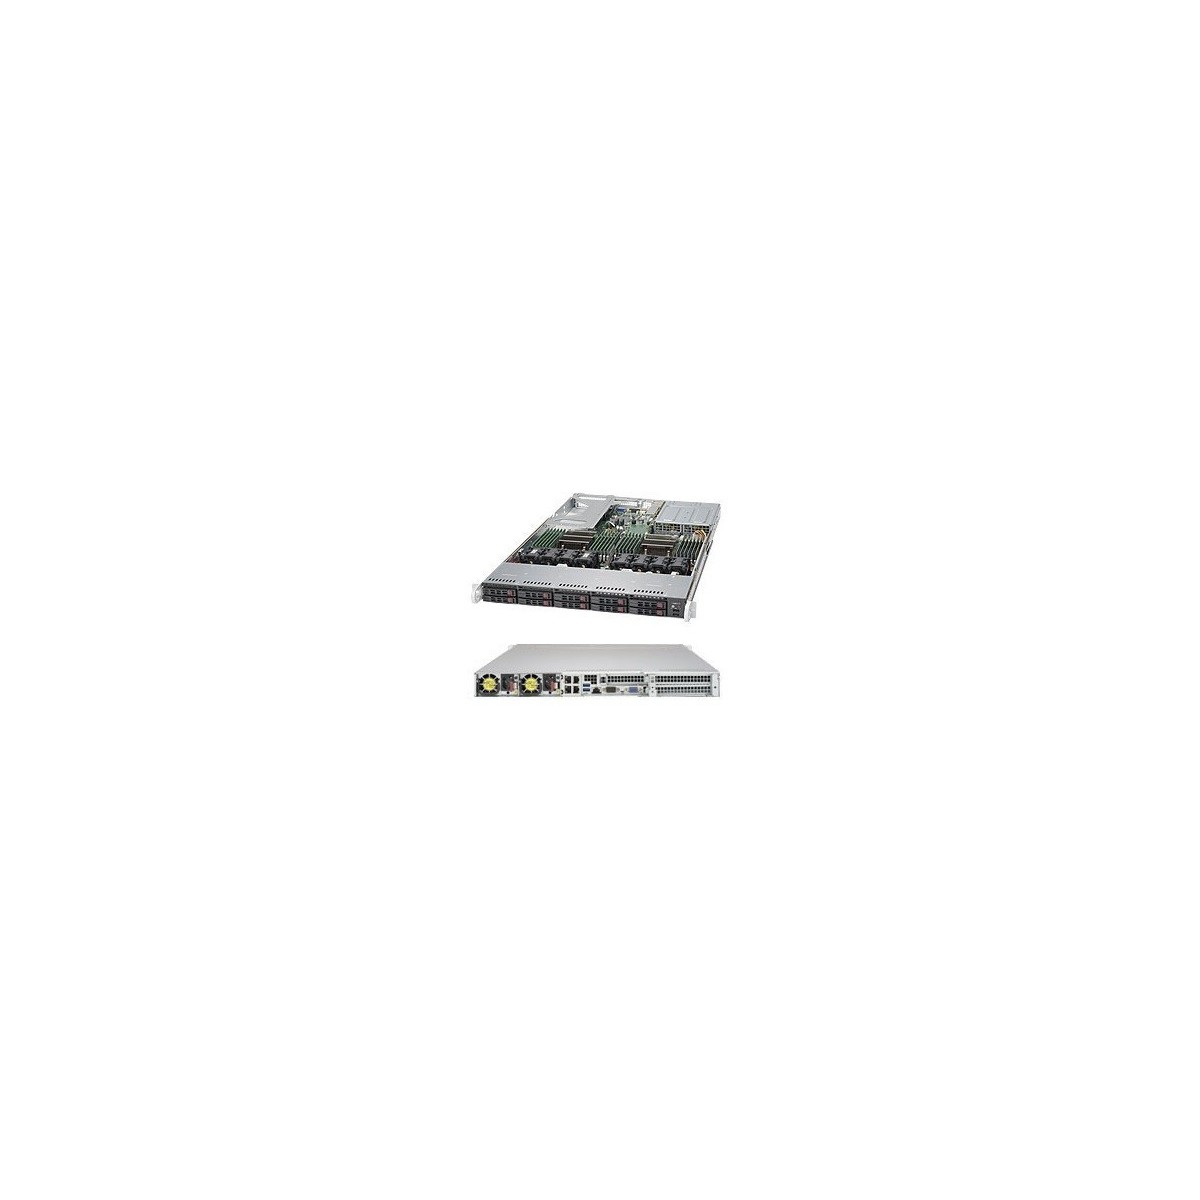 Supermicro 1028U-TR4T+ - Intel® C612 - LGA 2011 (Socket R) - Intel - 9.6 GT-s - QuickPath Interconnect (QPI) - 45 MB